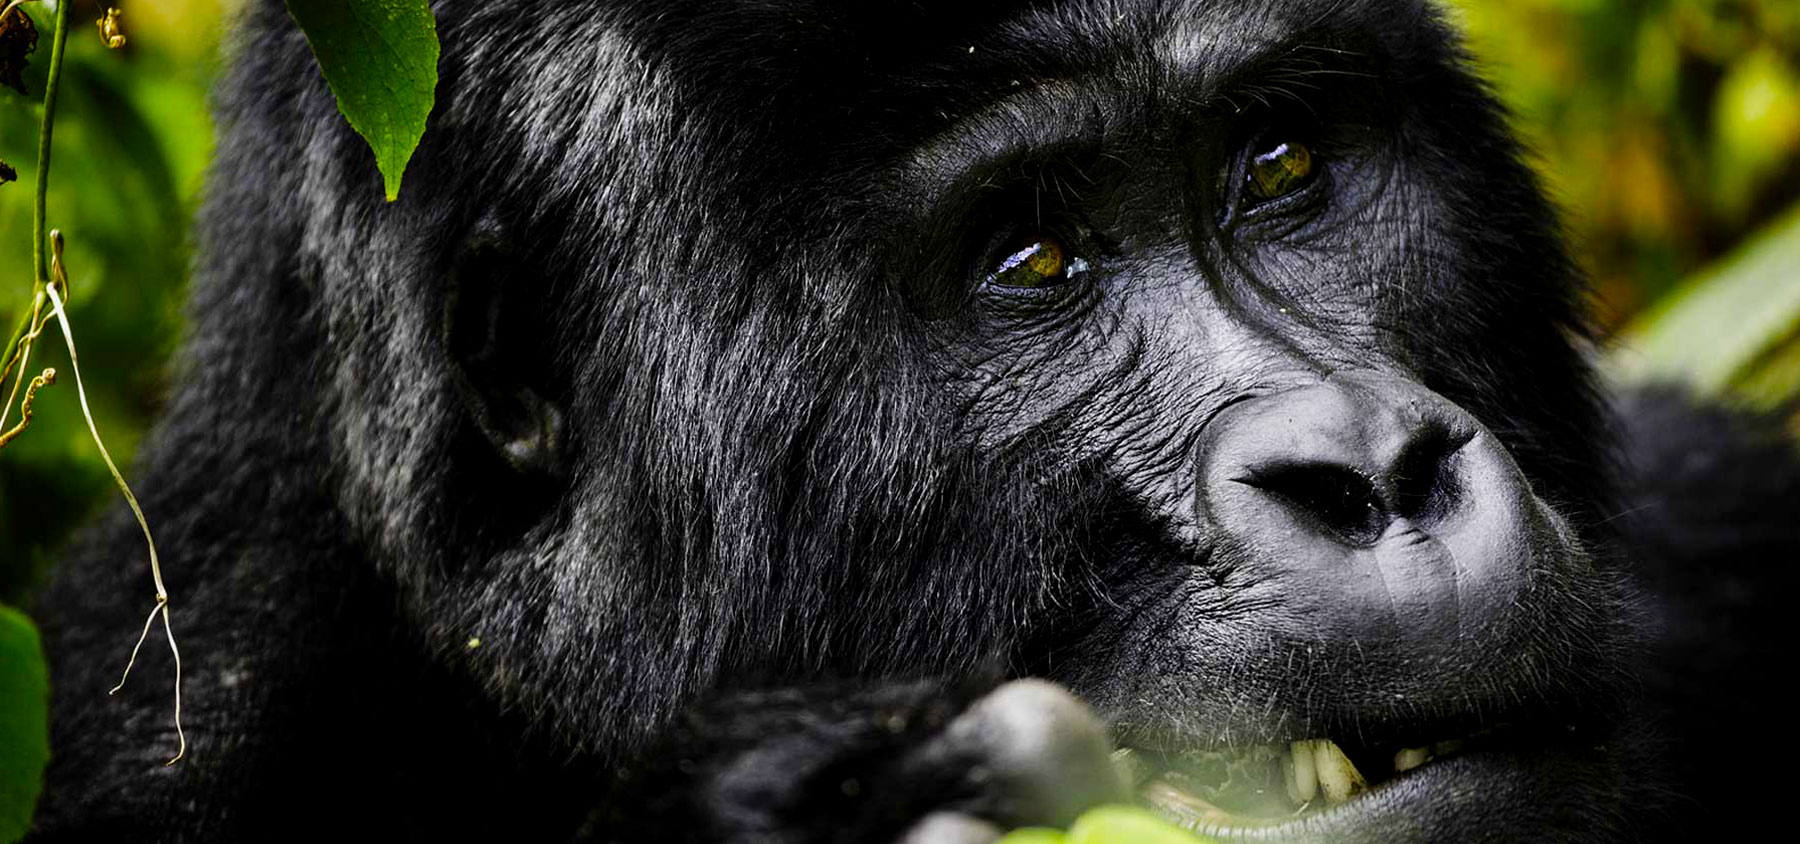 gorilla-trekking-tours-in-uganda-and-rwanda